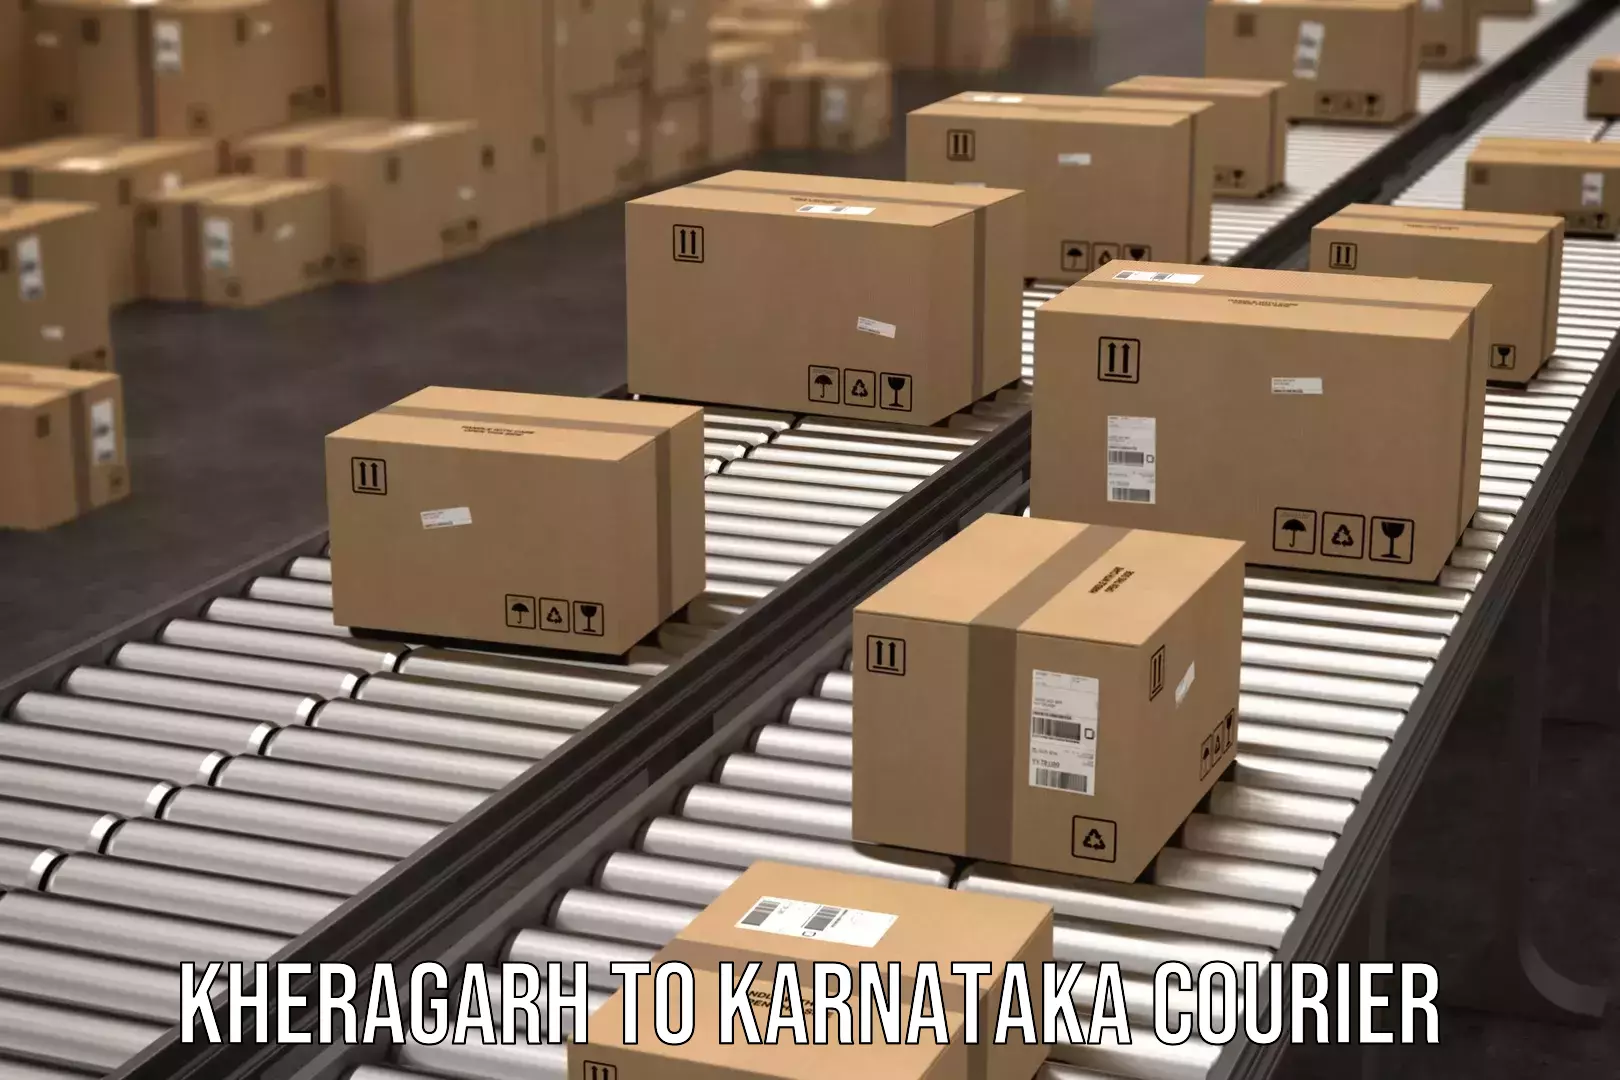 Reliable package handling Kheragarh to Kanjarakatte